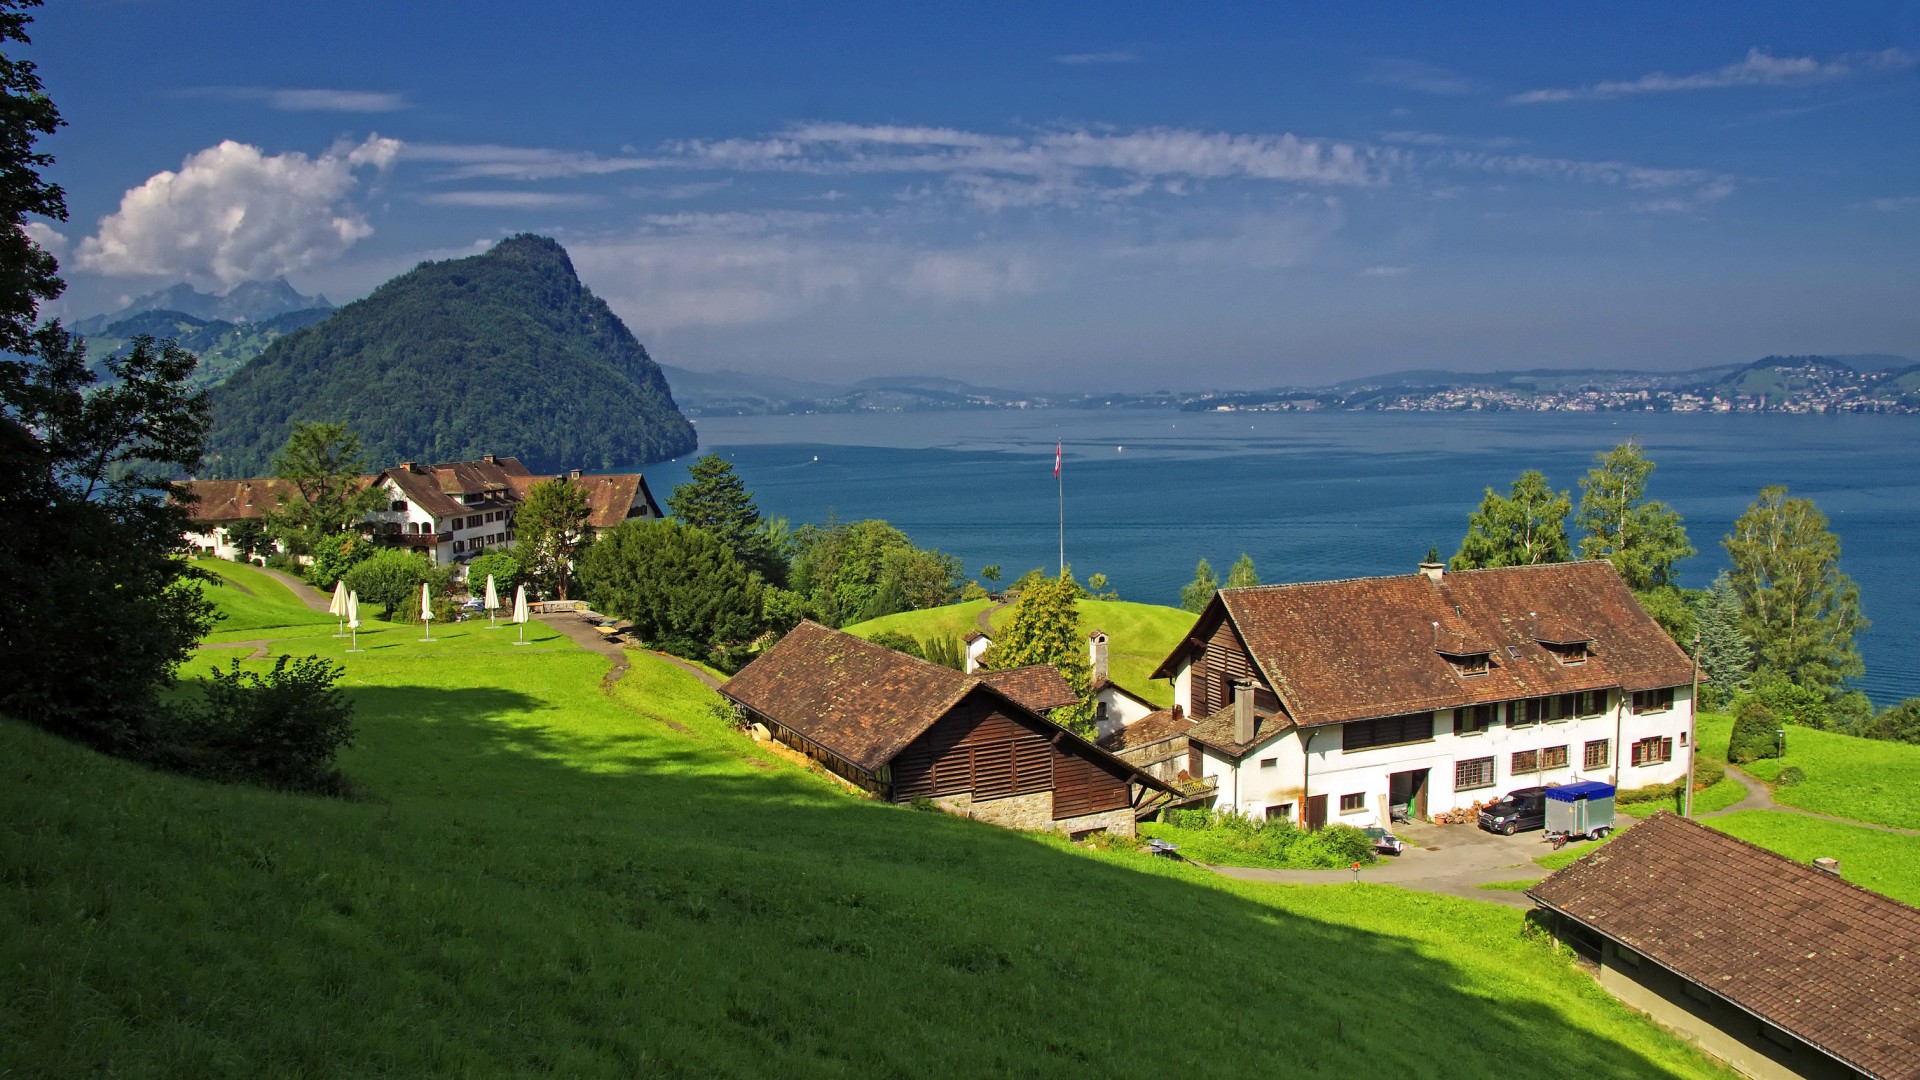 瑞士，盖尔绍，琉森湖，山，绿色草地，房屋，风景桌面壁纸